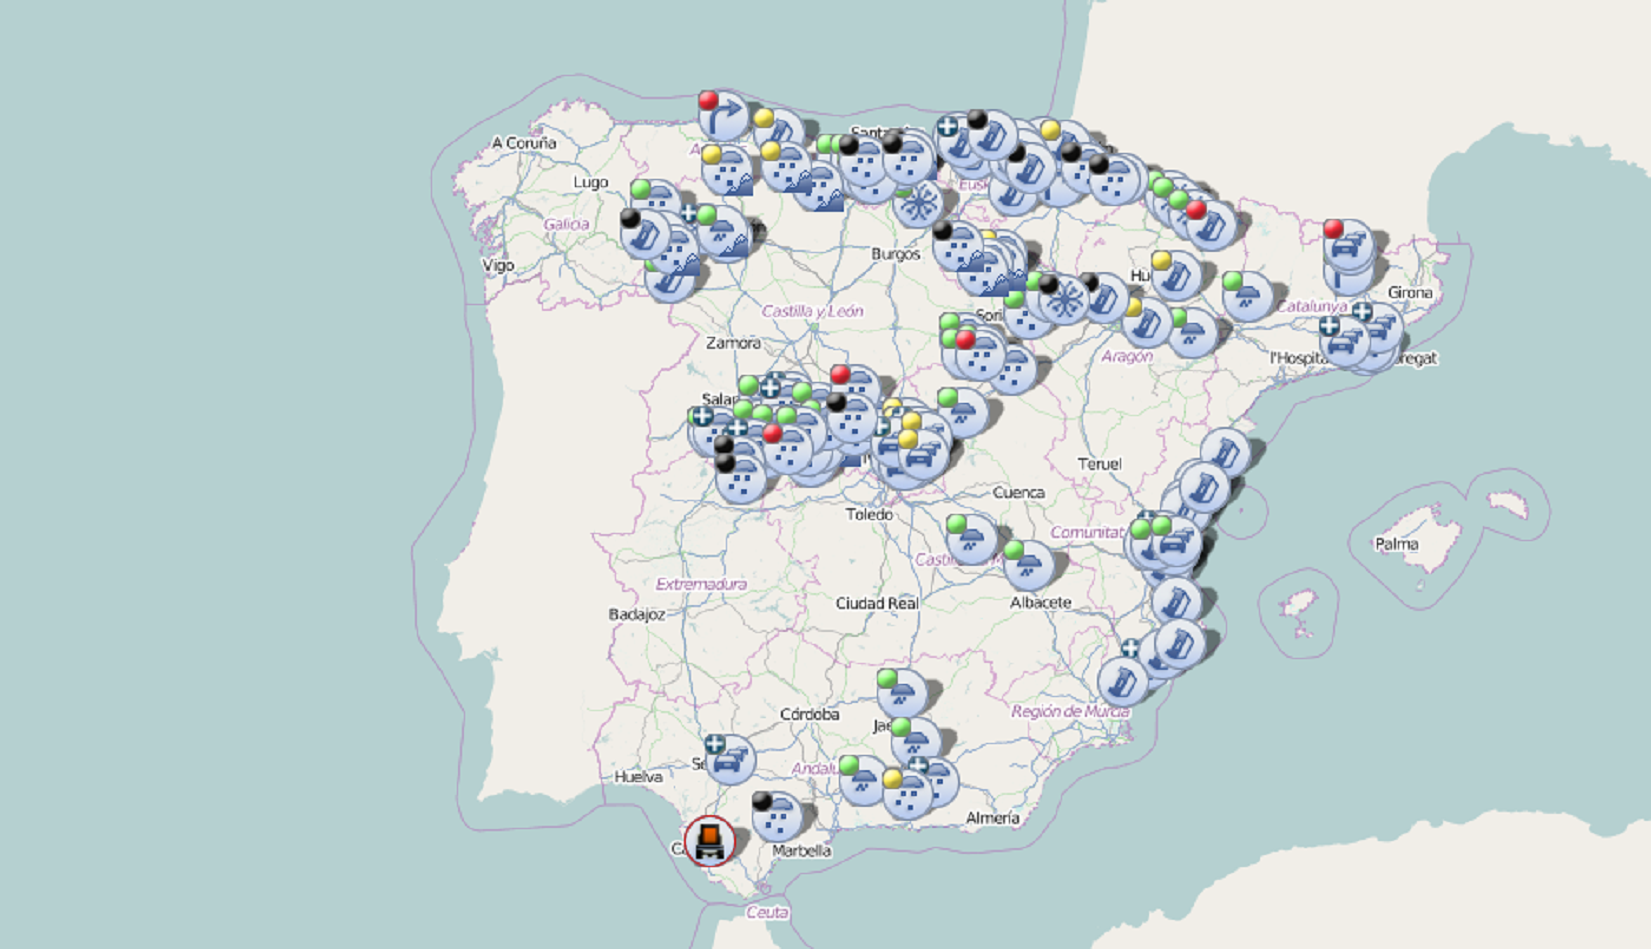 La DGT canvia el color del mapa després de pintar Catalunya com un estat independent